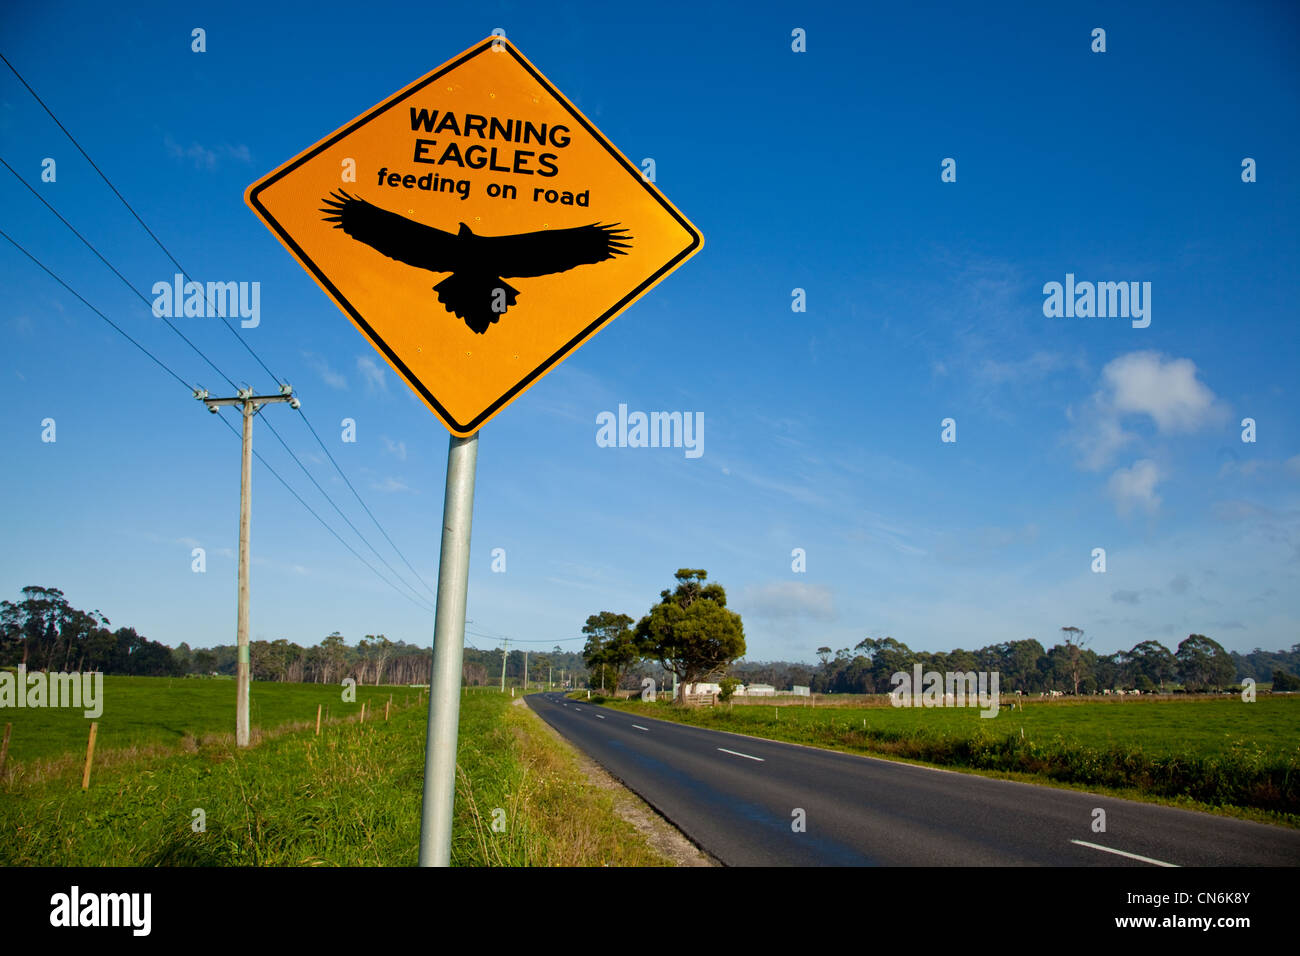 Adler auf Straße Warnzeichen. Tasmanien. Australien. Stockfoto